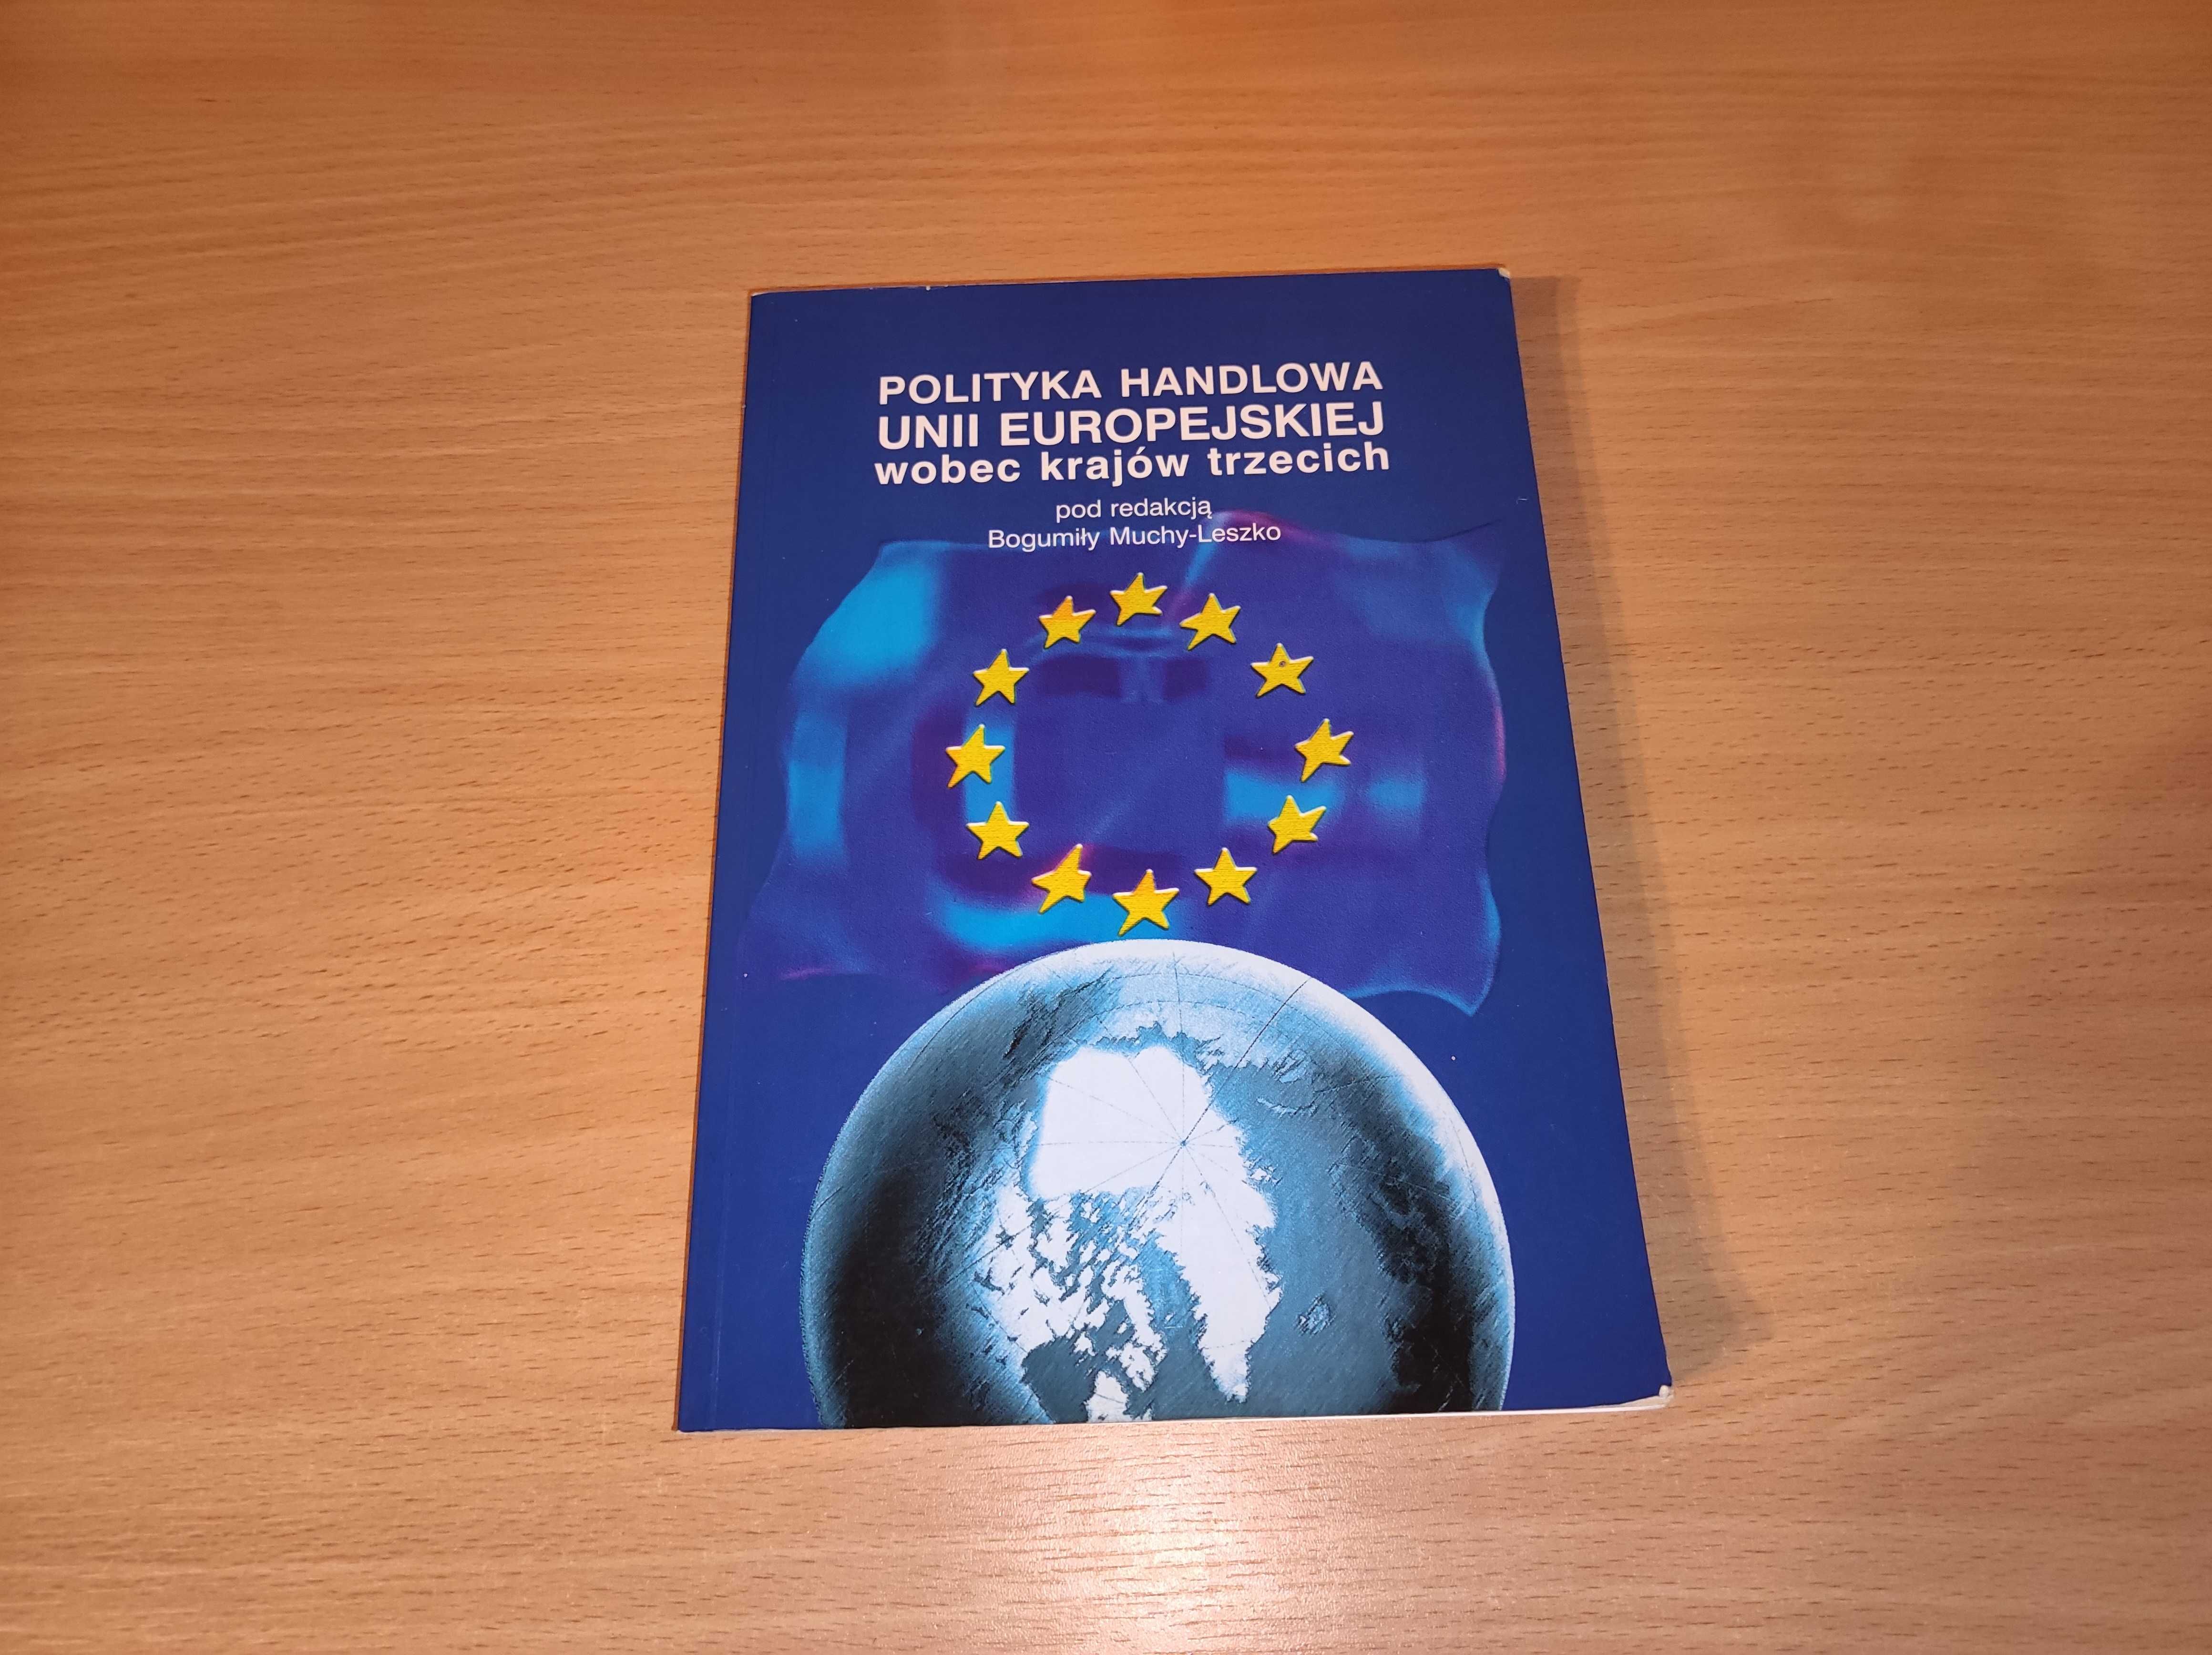 Książka "Polityka handlowa Unii Europejskiej"